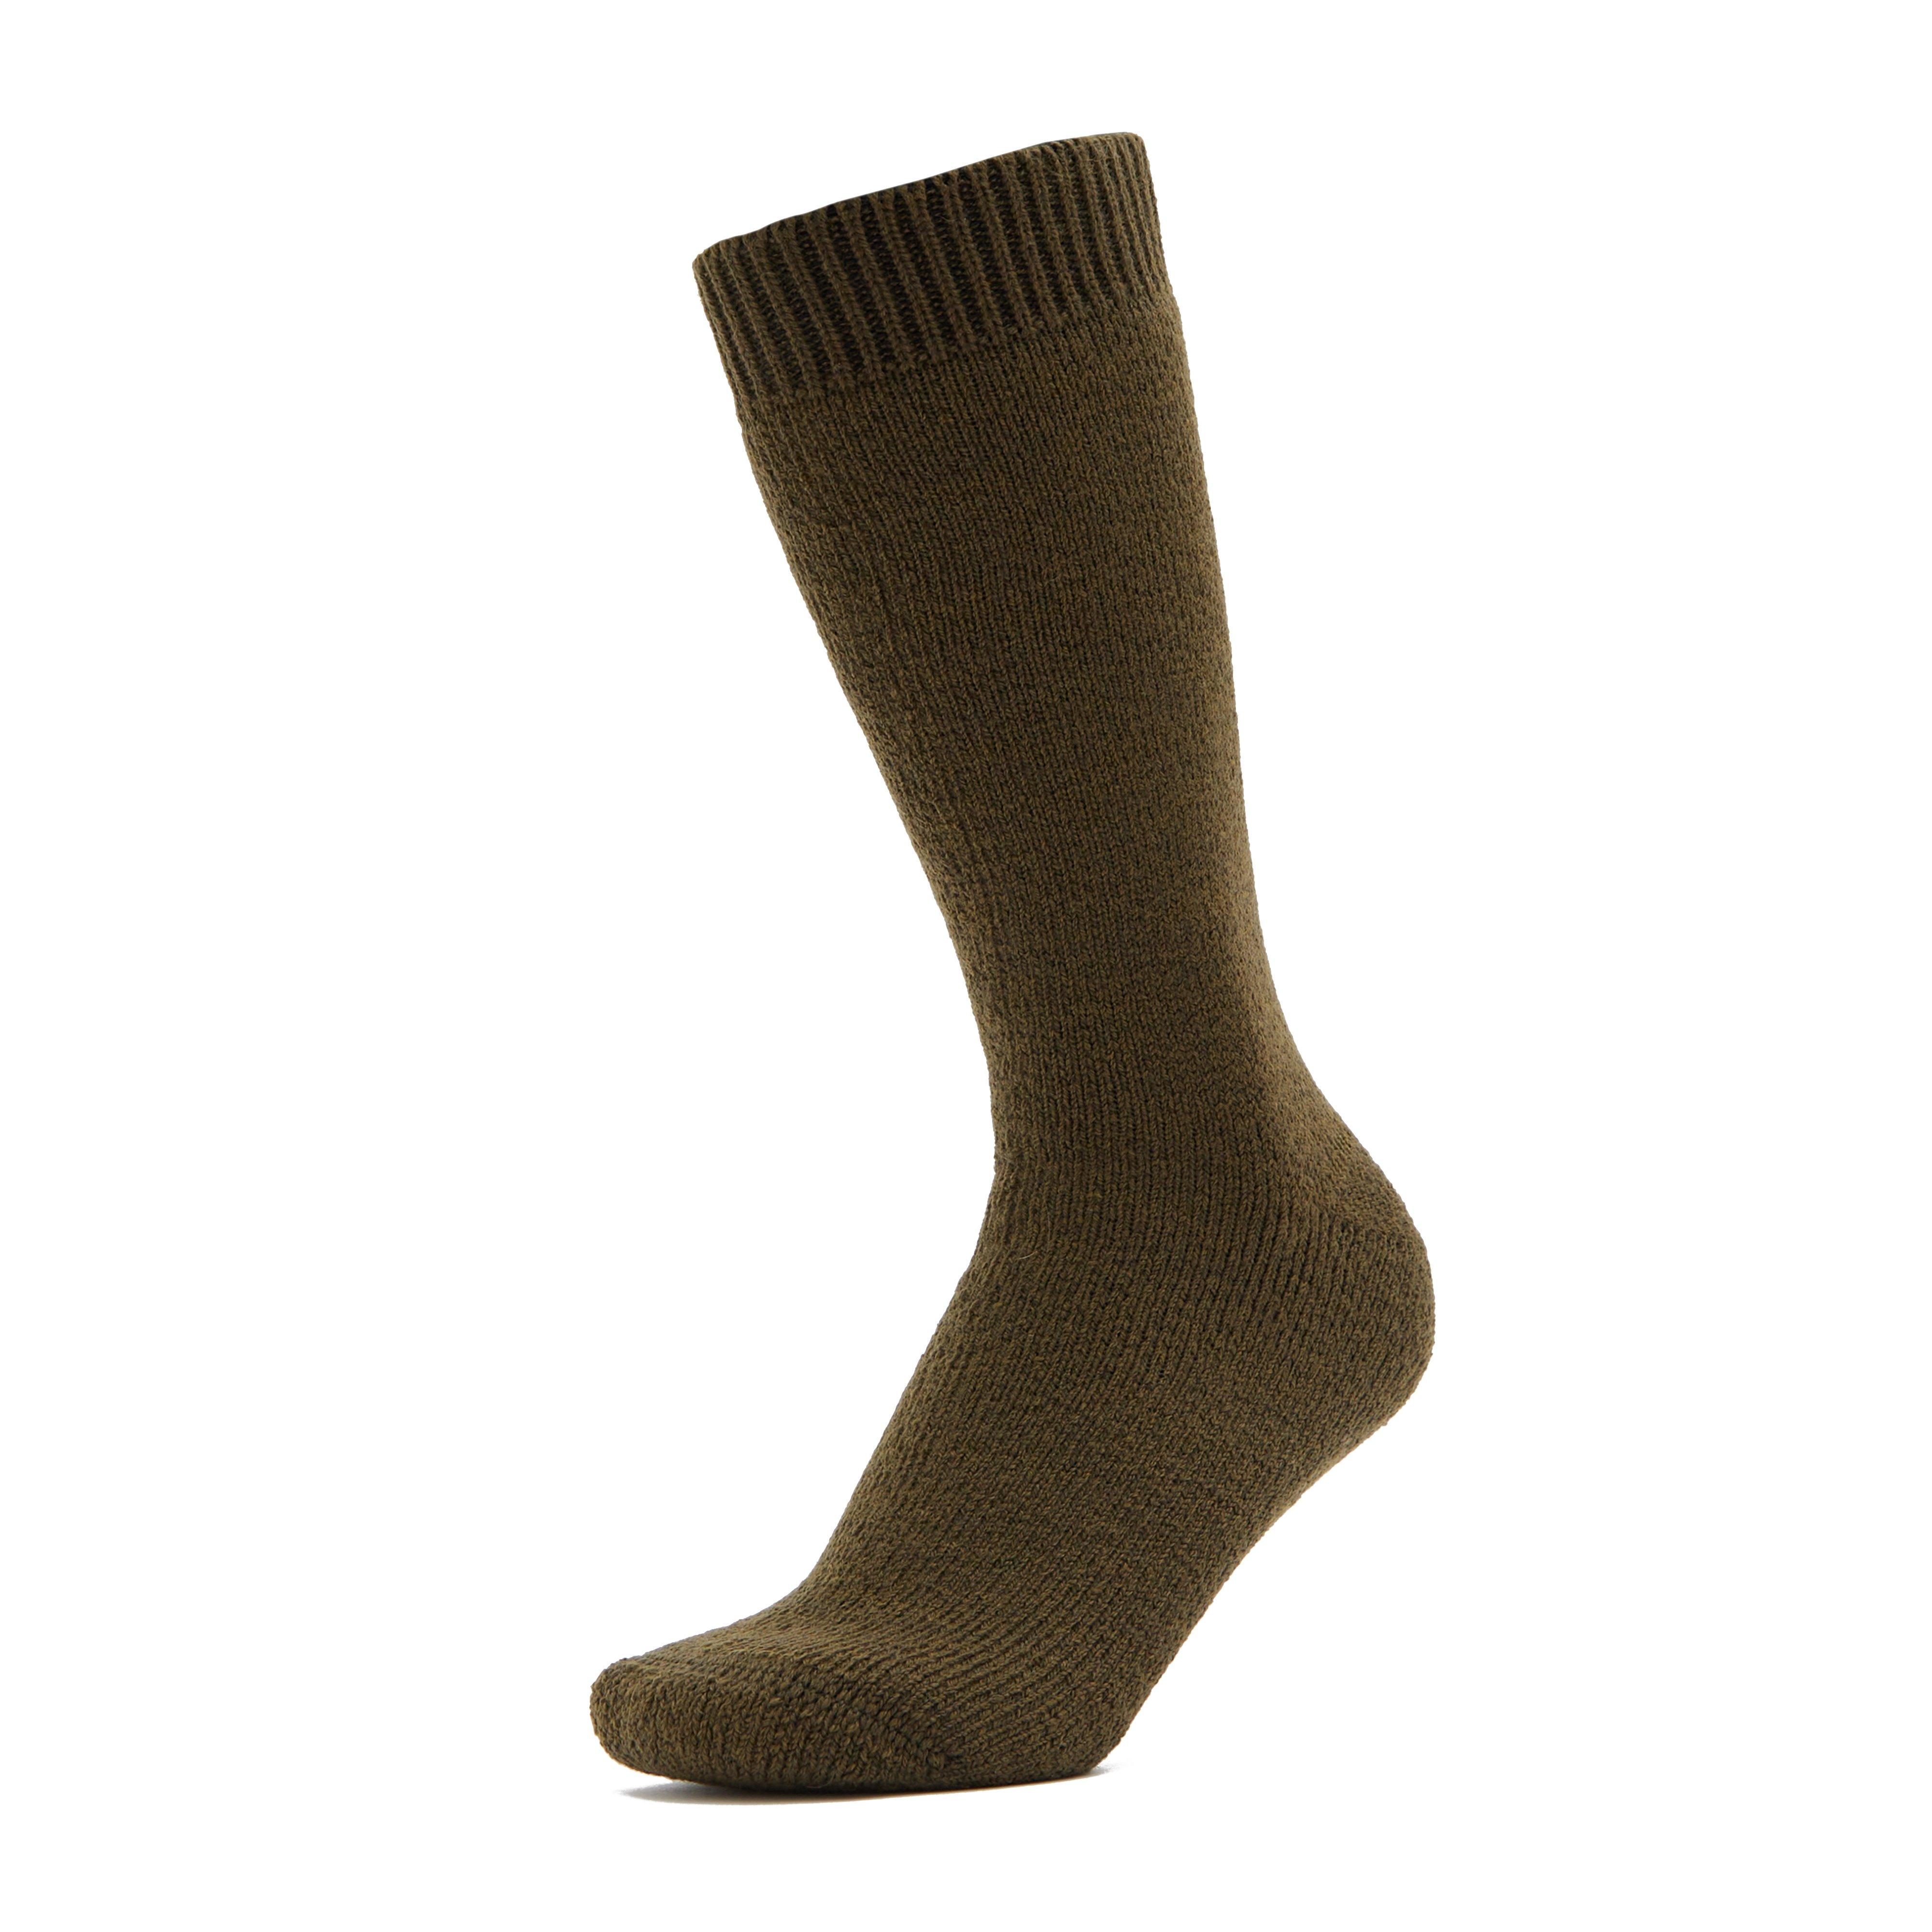 Adults Wellington Calf Socks Olive Green